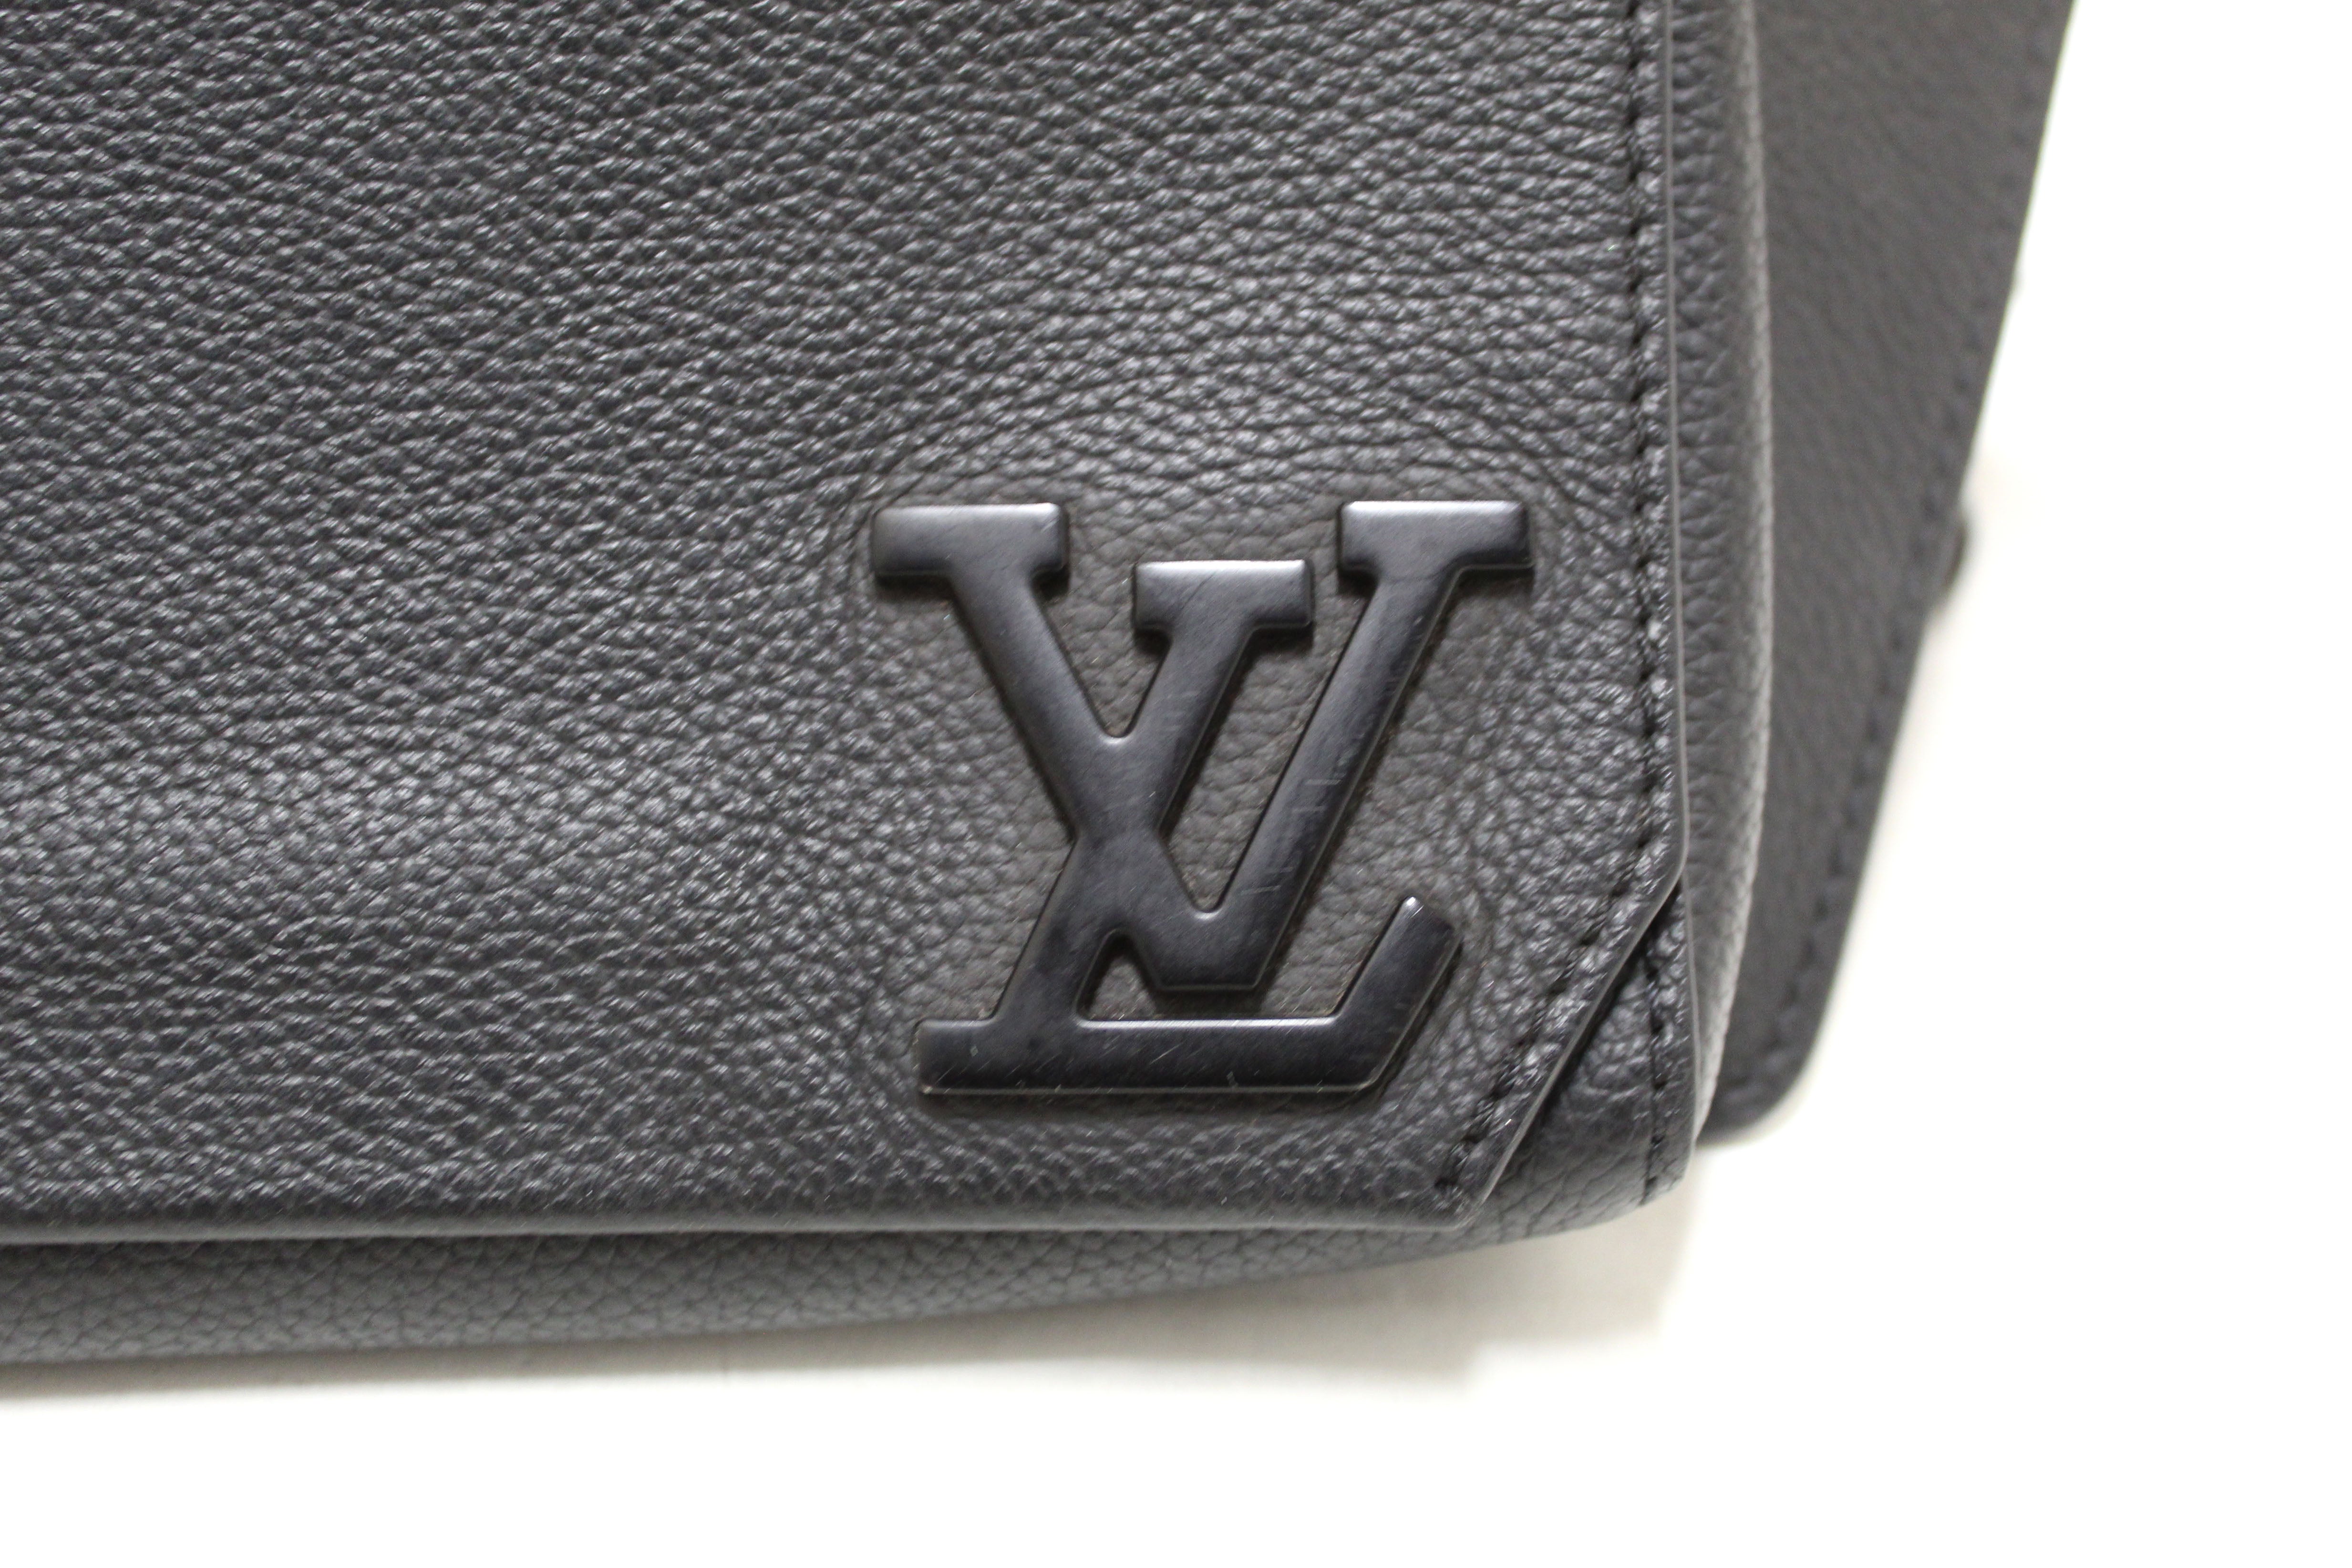 Authentic Louis Vuitton Black Leather Takeoff Sling Bag – Paris